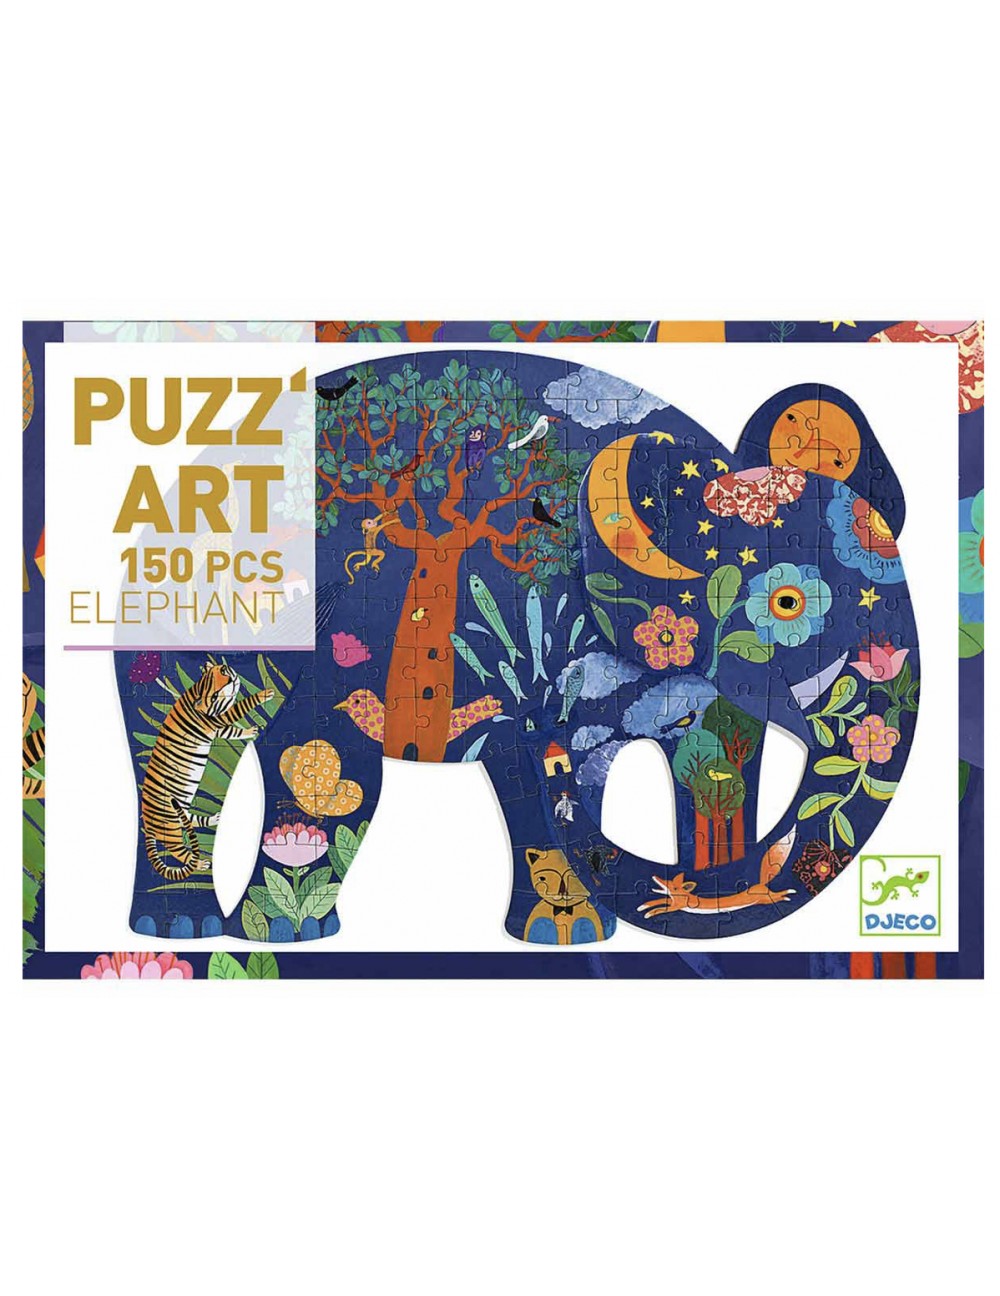 Puzz art ELEPHANT - 150 PCS